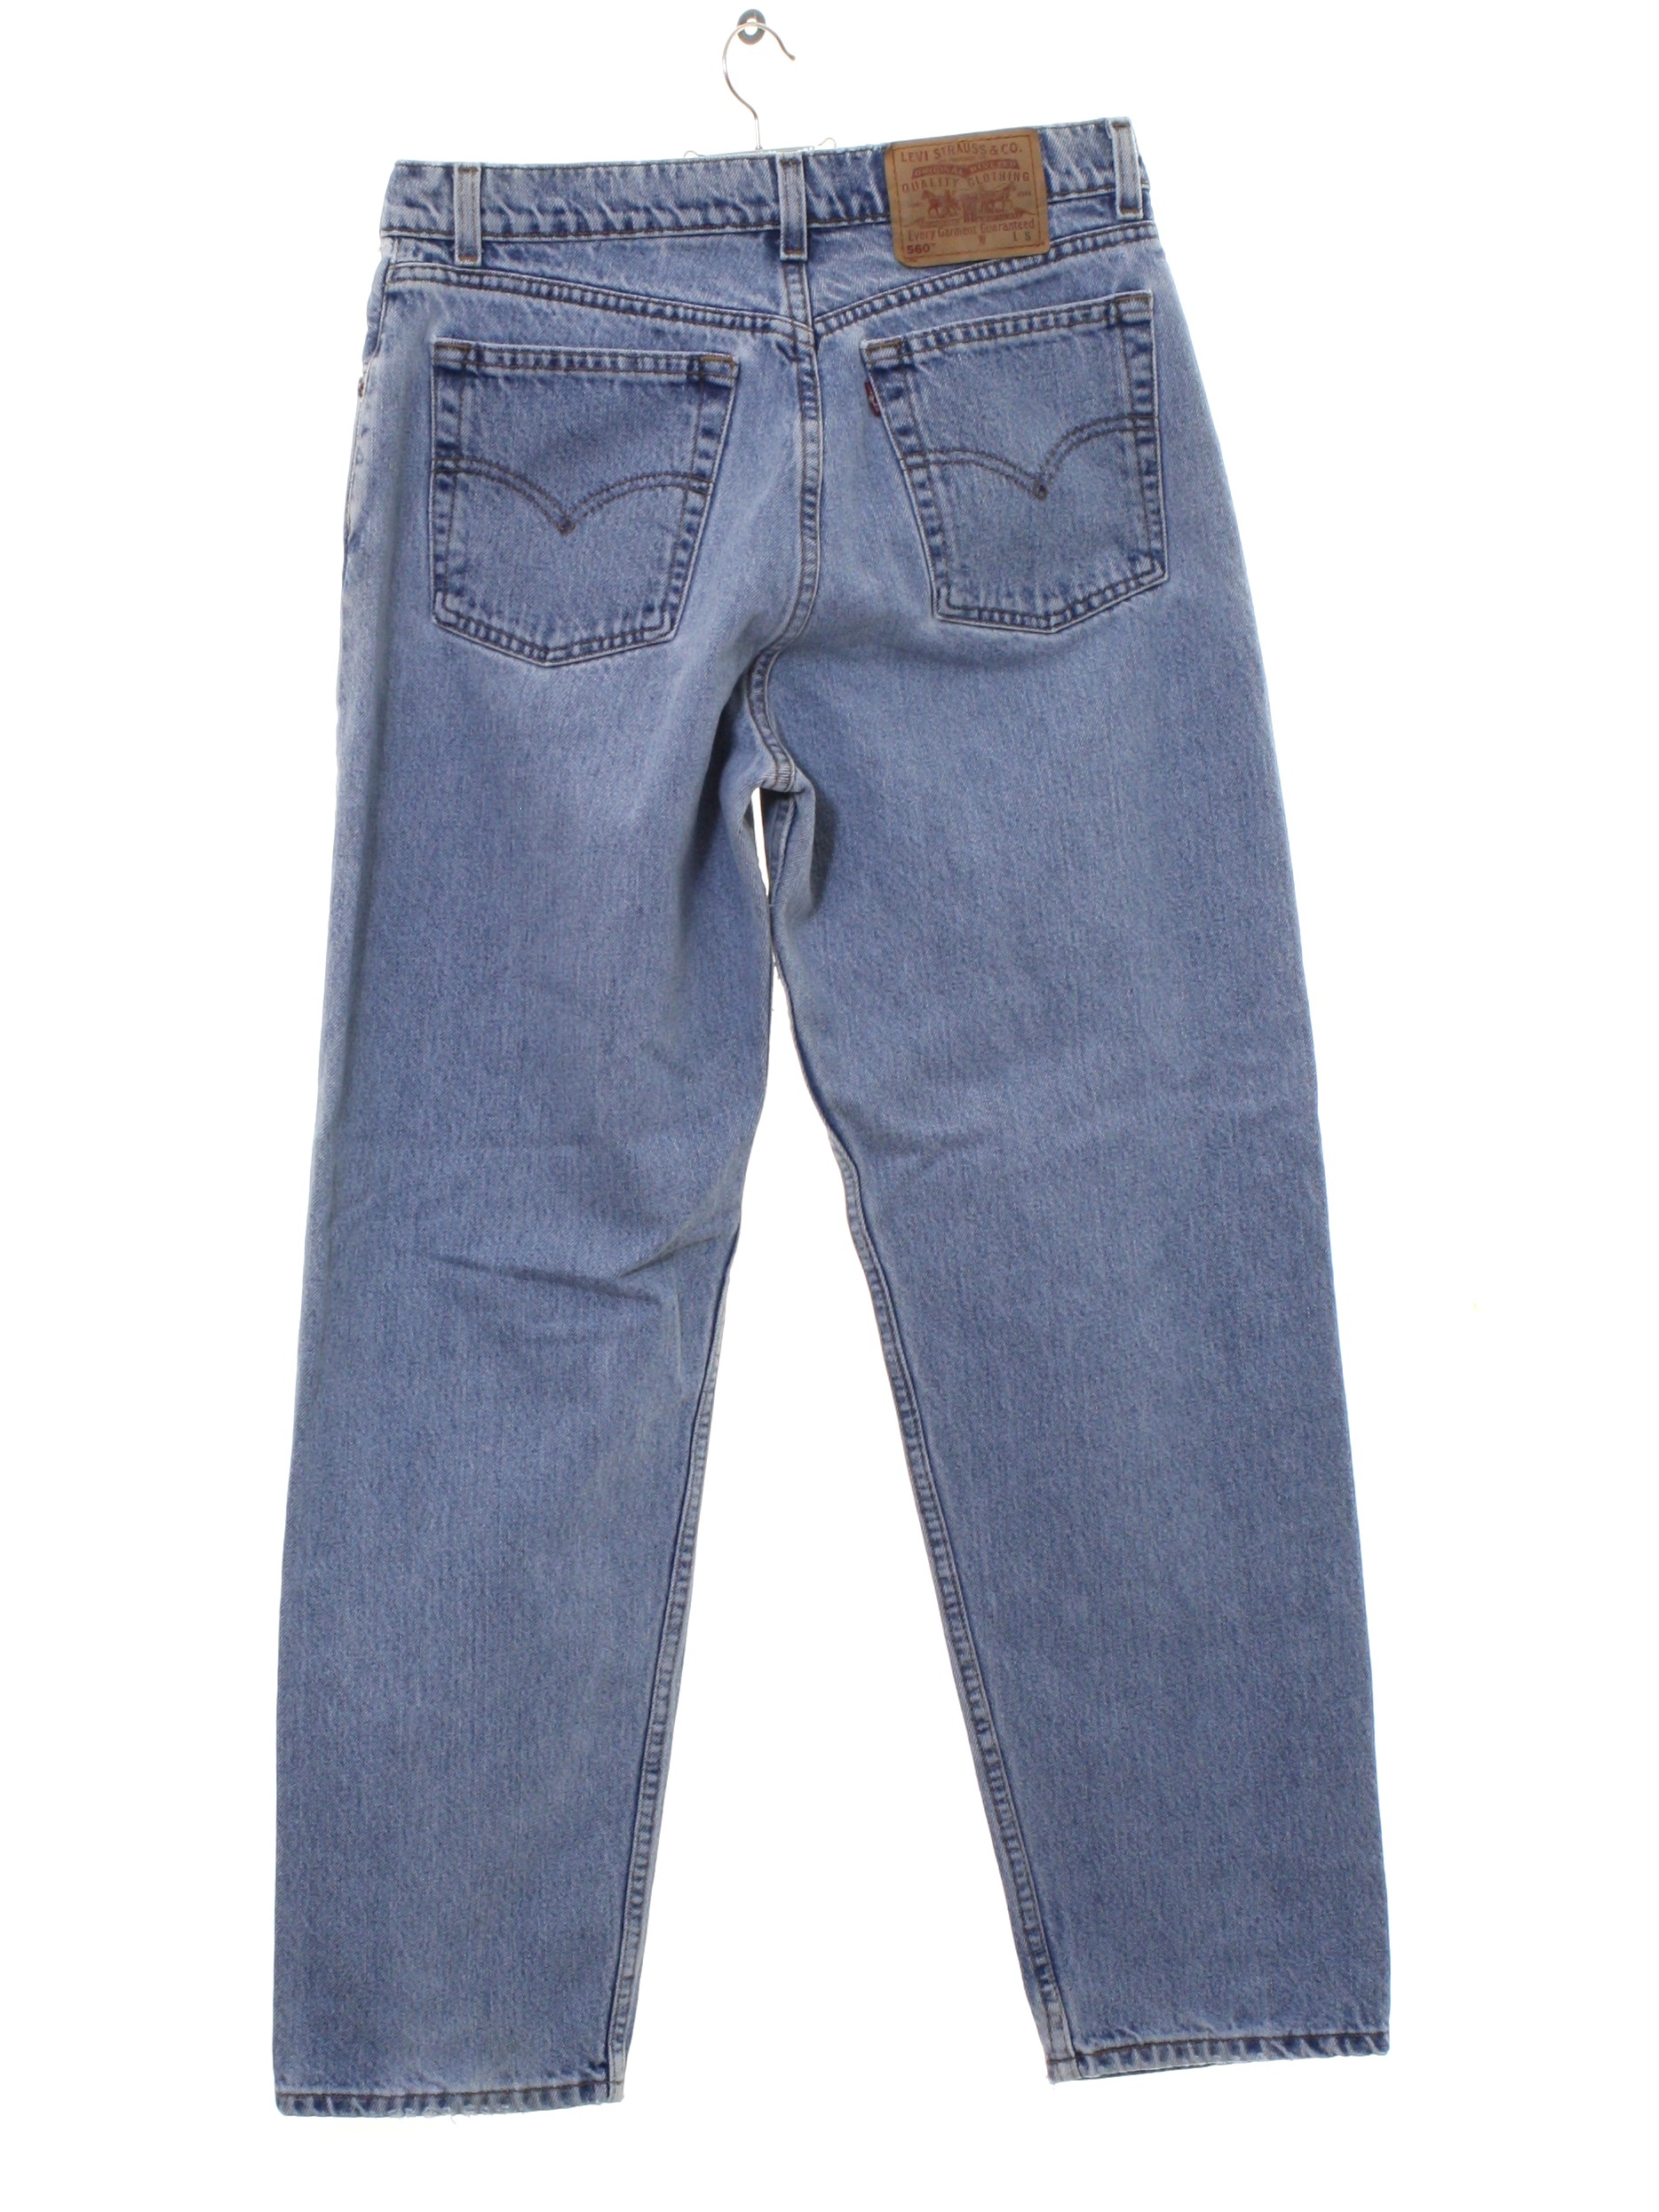 1990s Vintage Pants: 90s -Levis 560- Womens faded blue cotton denim ...